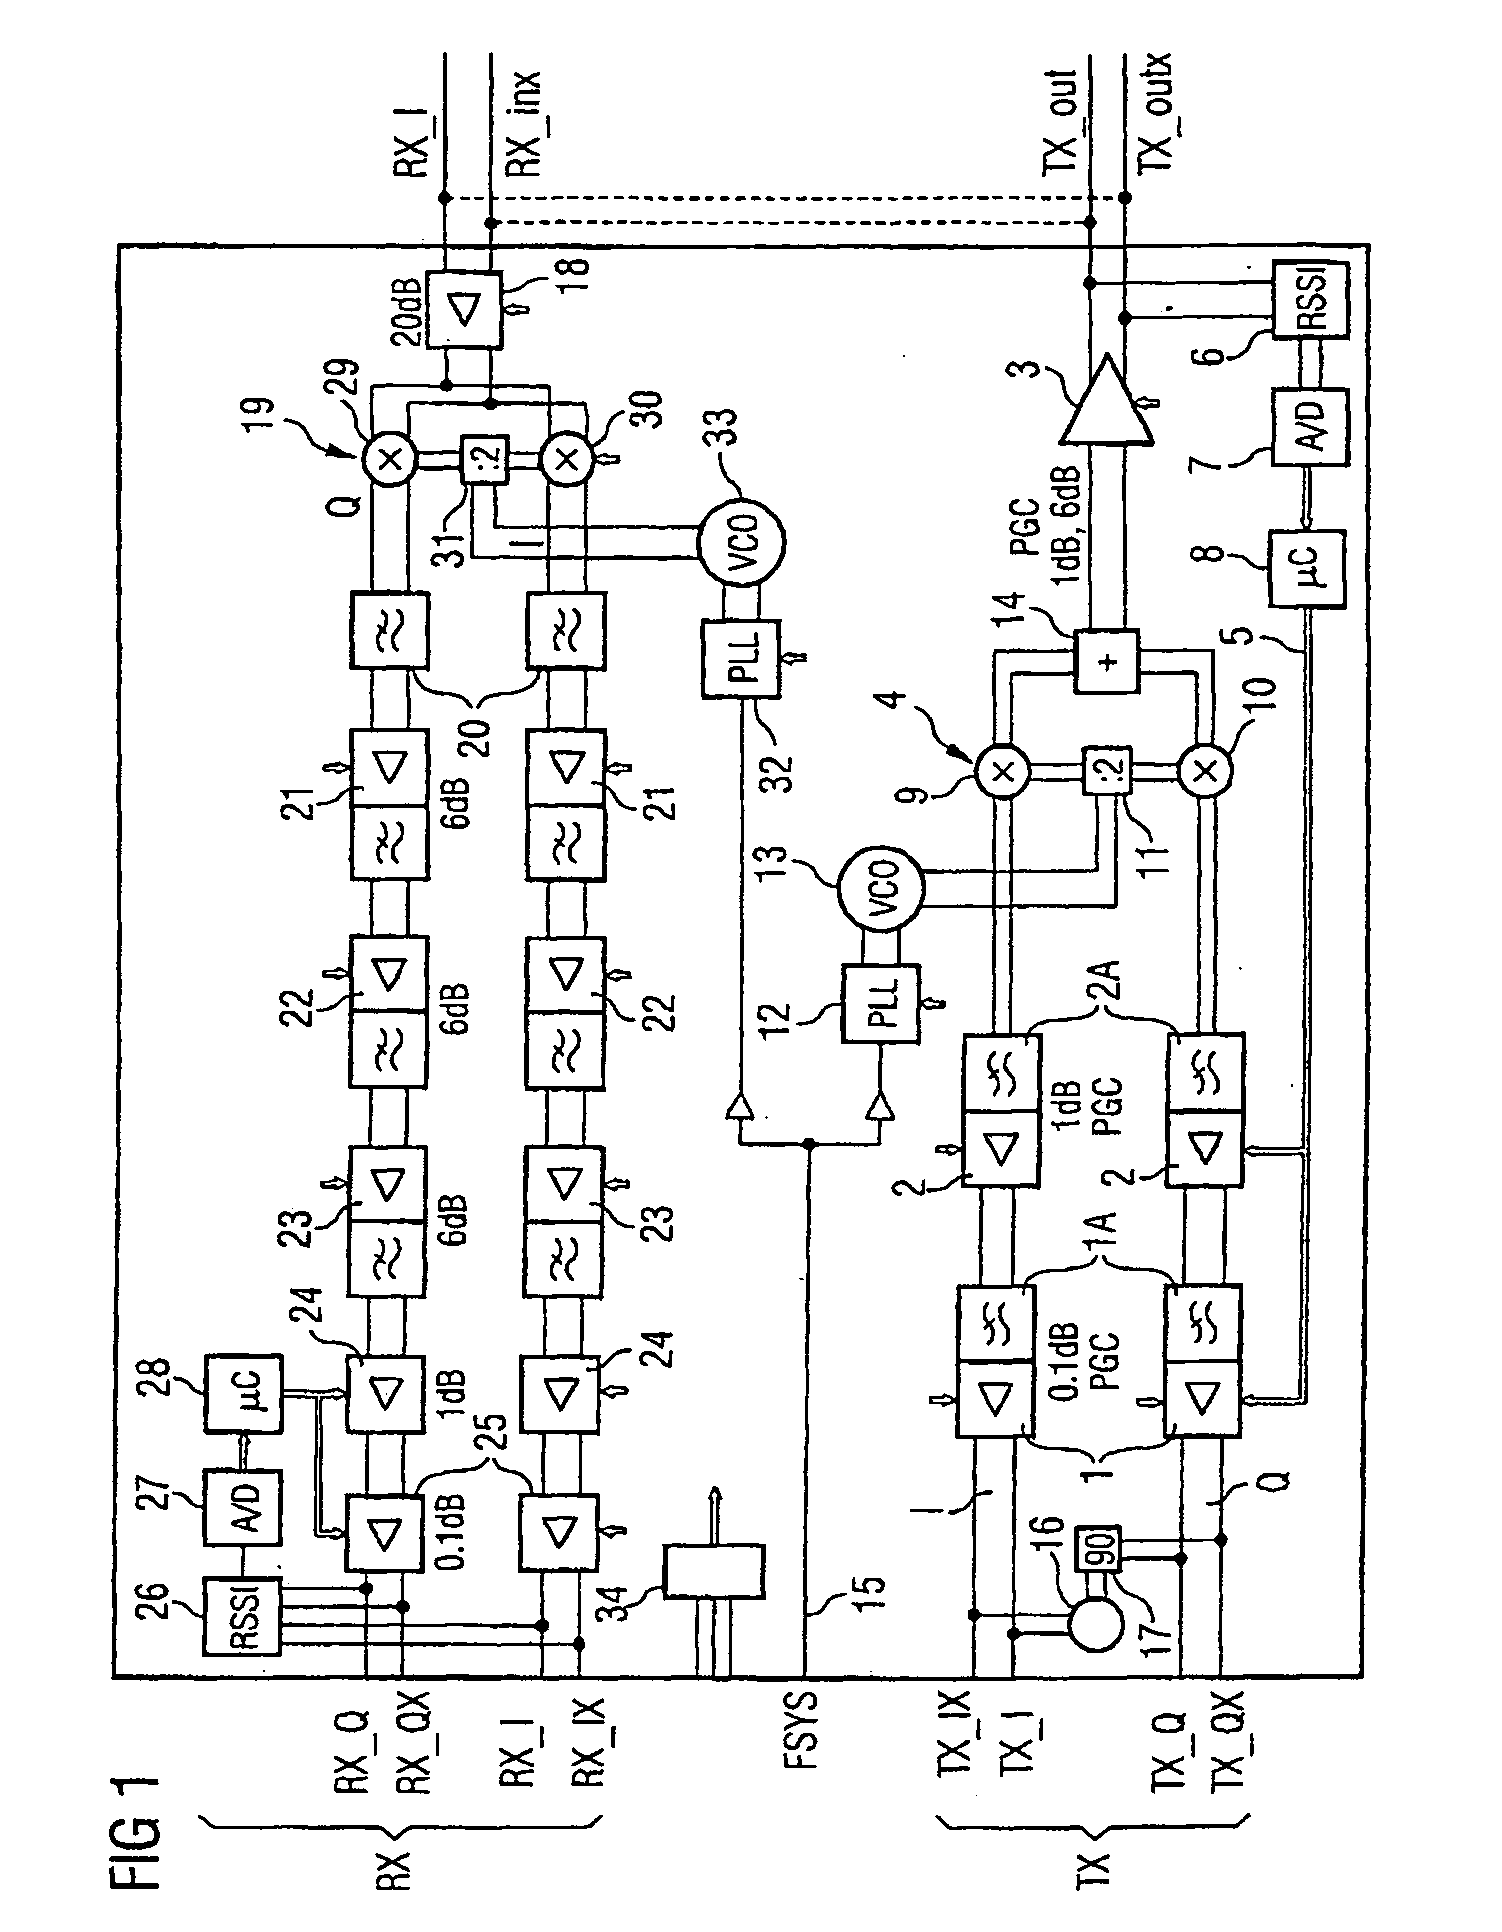 Amplifier arrangement and method for calibrating an amplifier arrangement